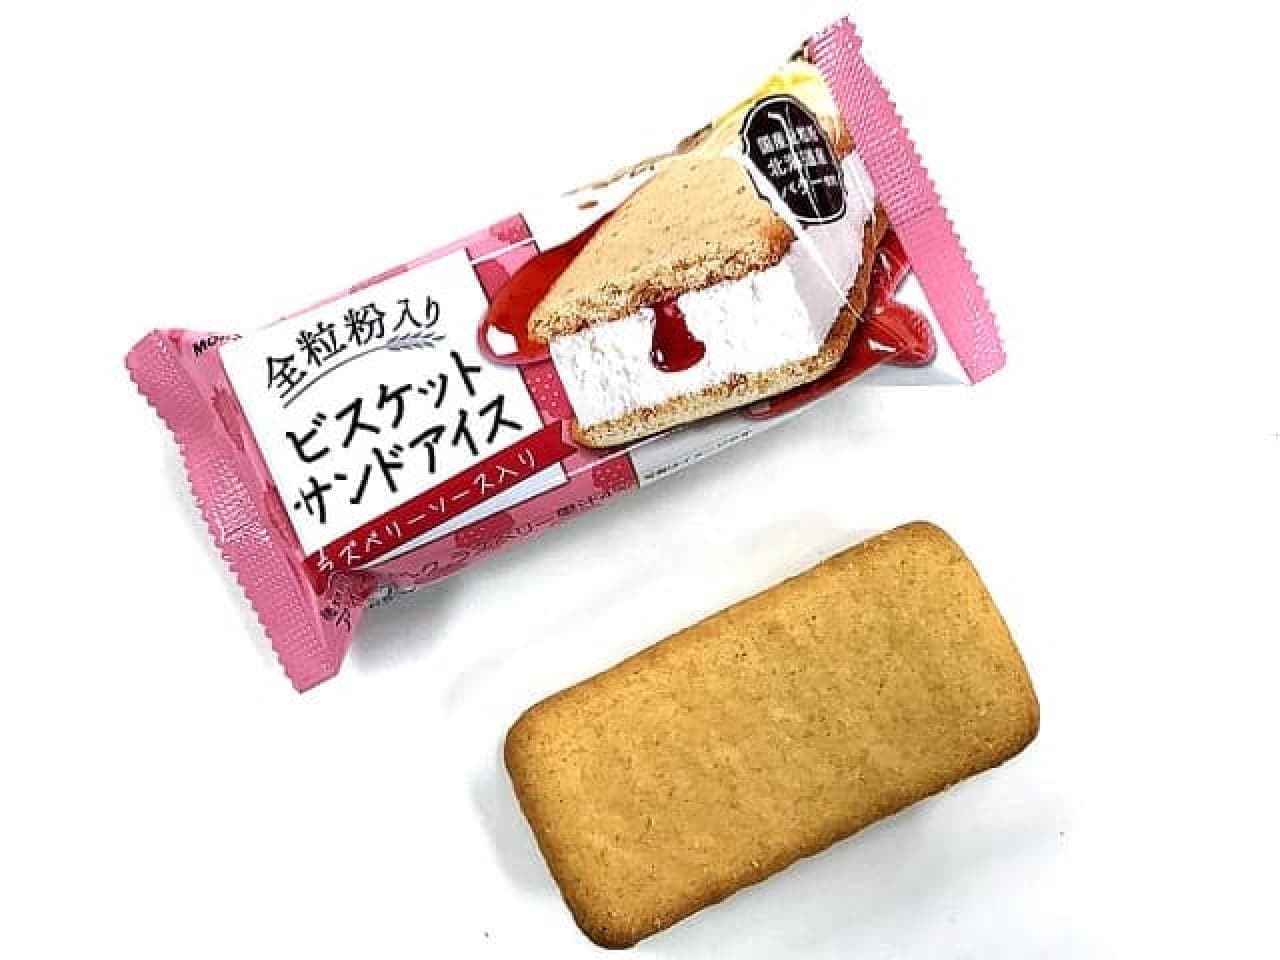 7-ELEVEN "Morinaga Whole Grain Biscuit Sandwich Ice Cream